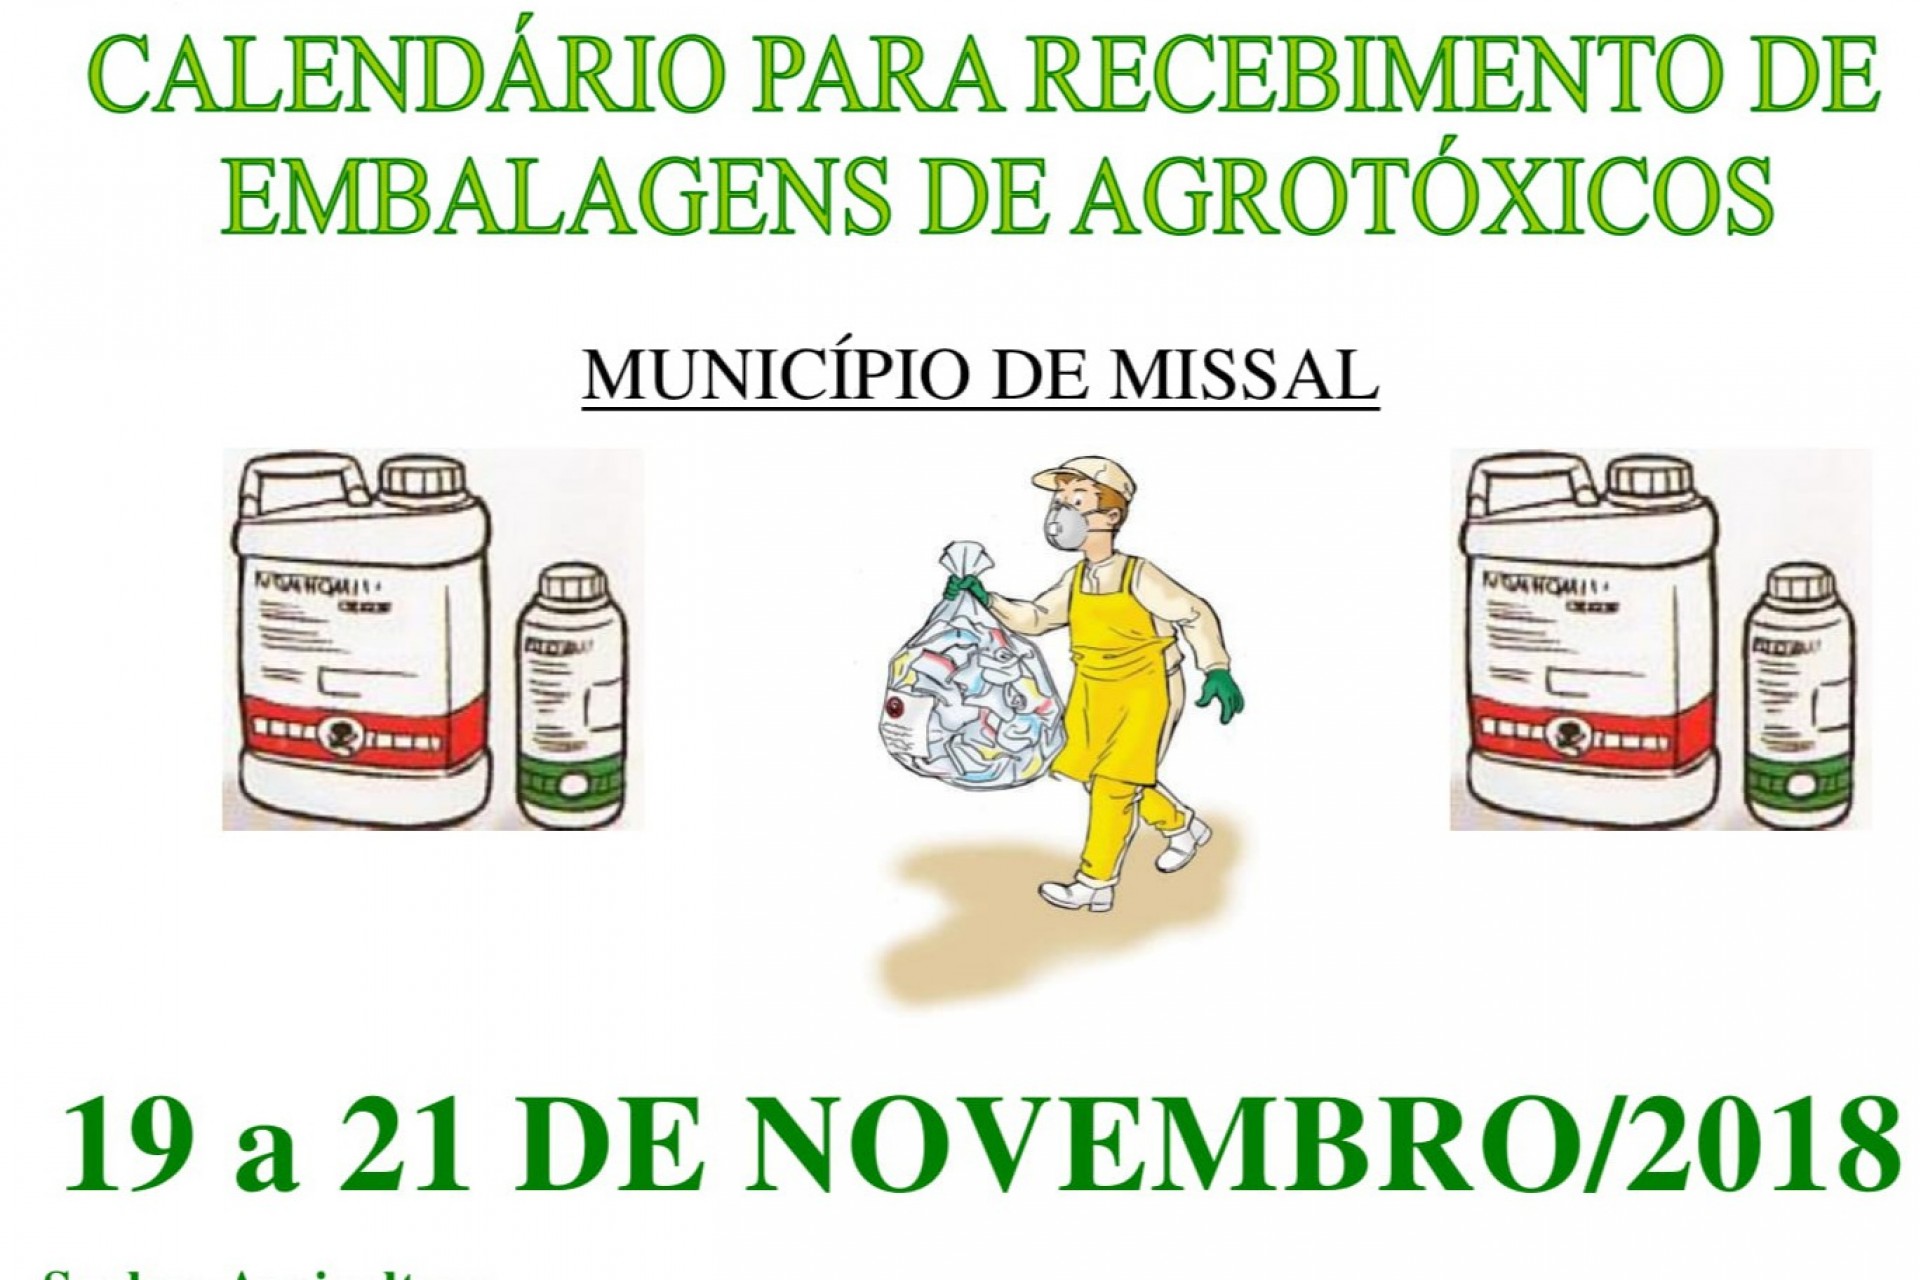 Calendário para recebimento de embalagens de agrotóxicos